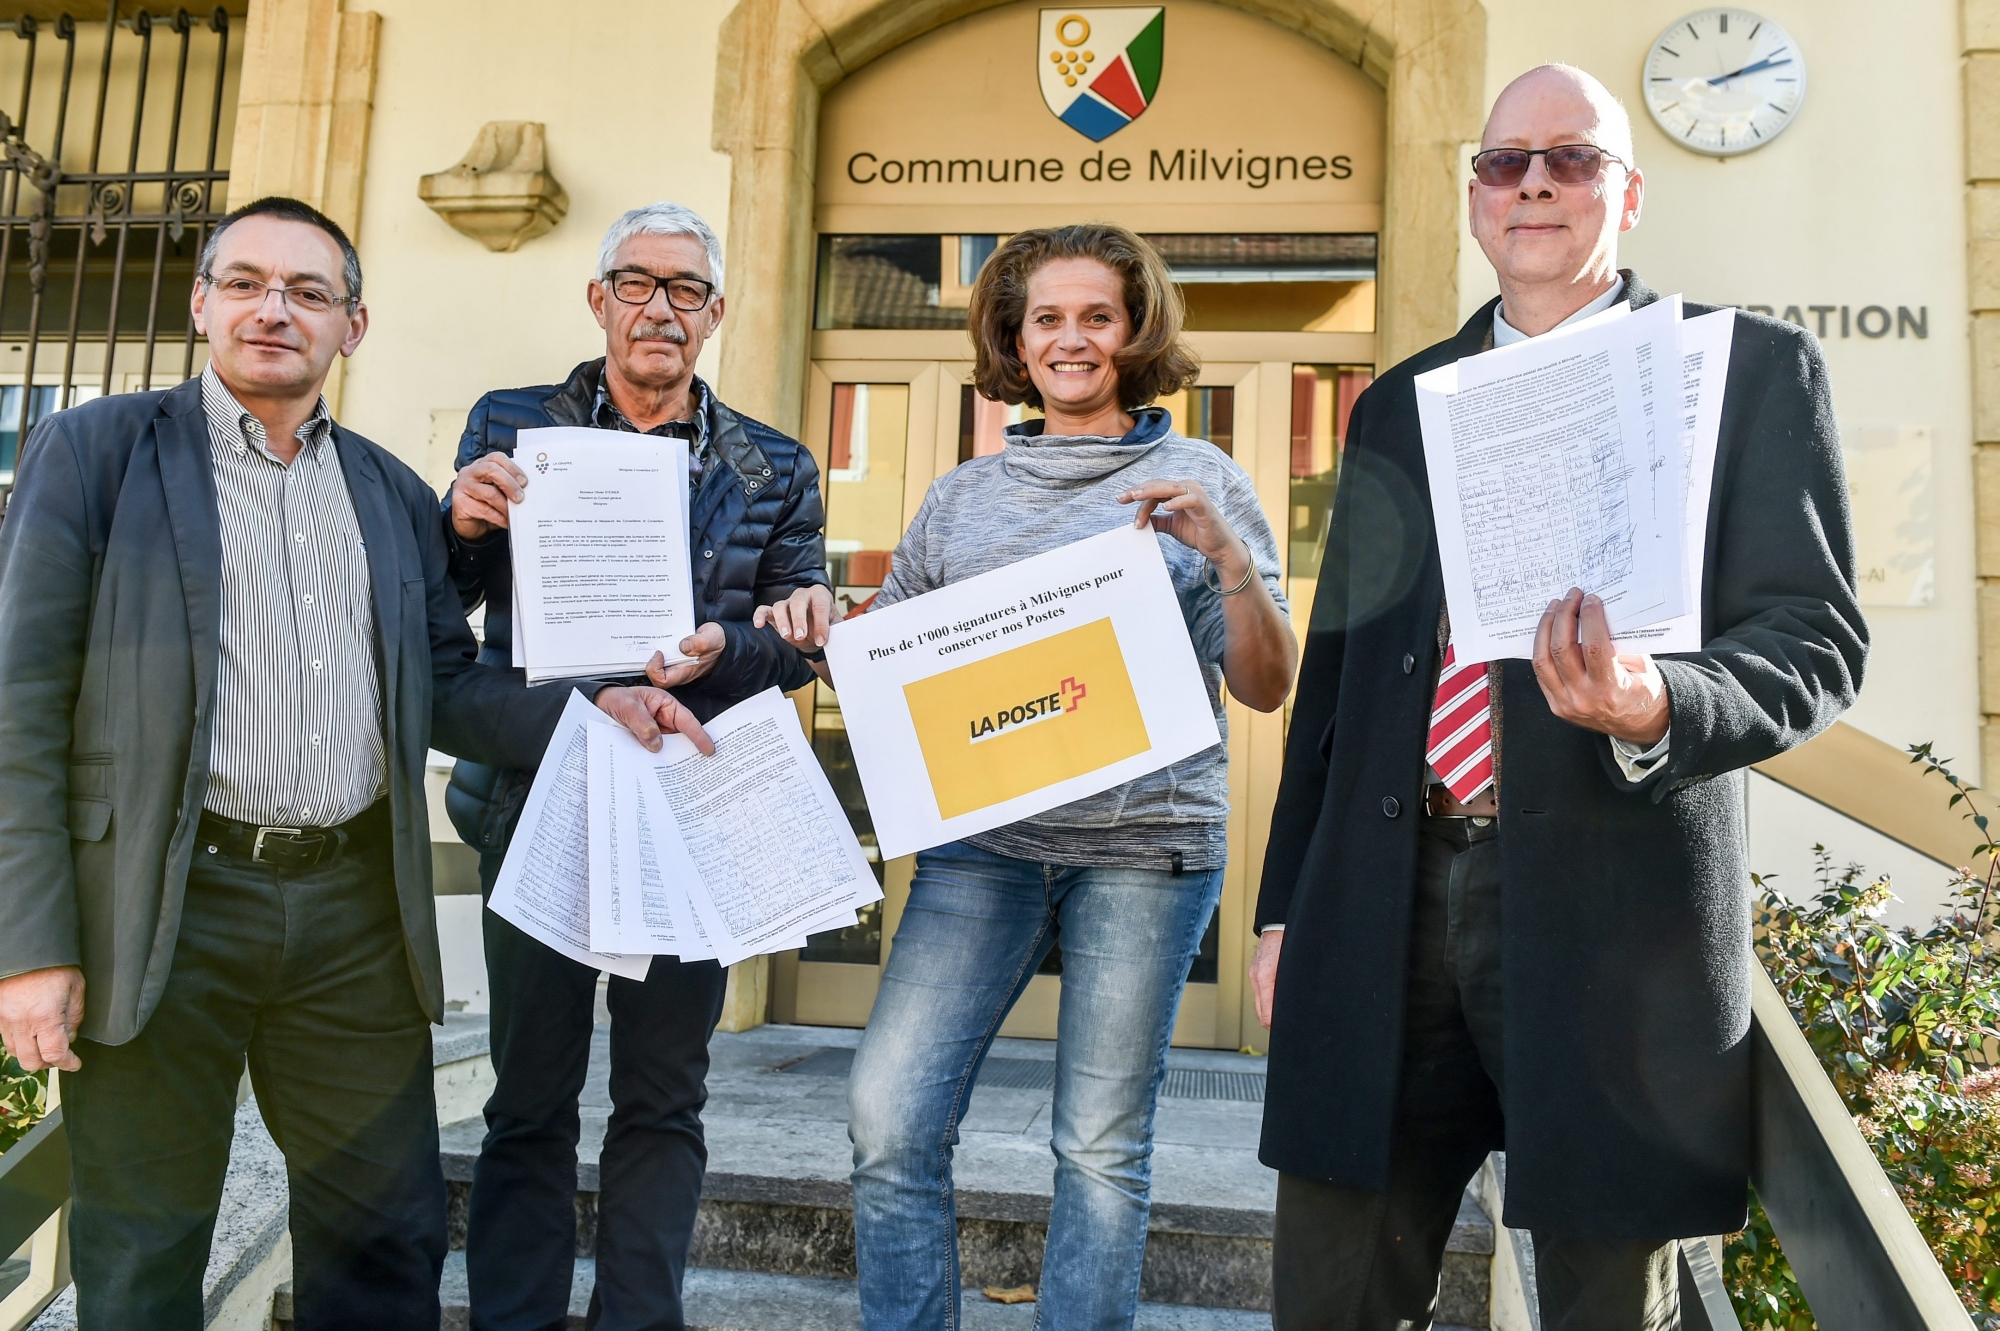 Le groupe " La Grappe" dépose une pétition contre la fermeture des bureaux de Poste à Milvignes.
     
COLOMBIER 3/11/2017
Photo: Christian Galley